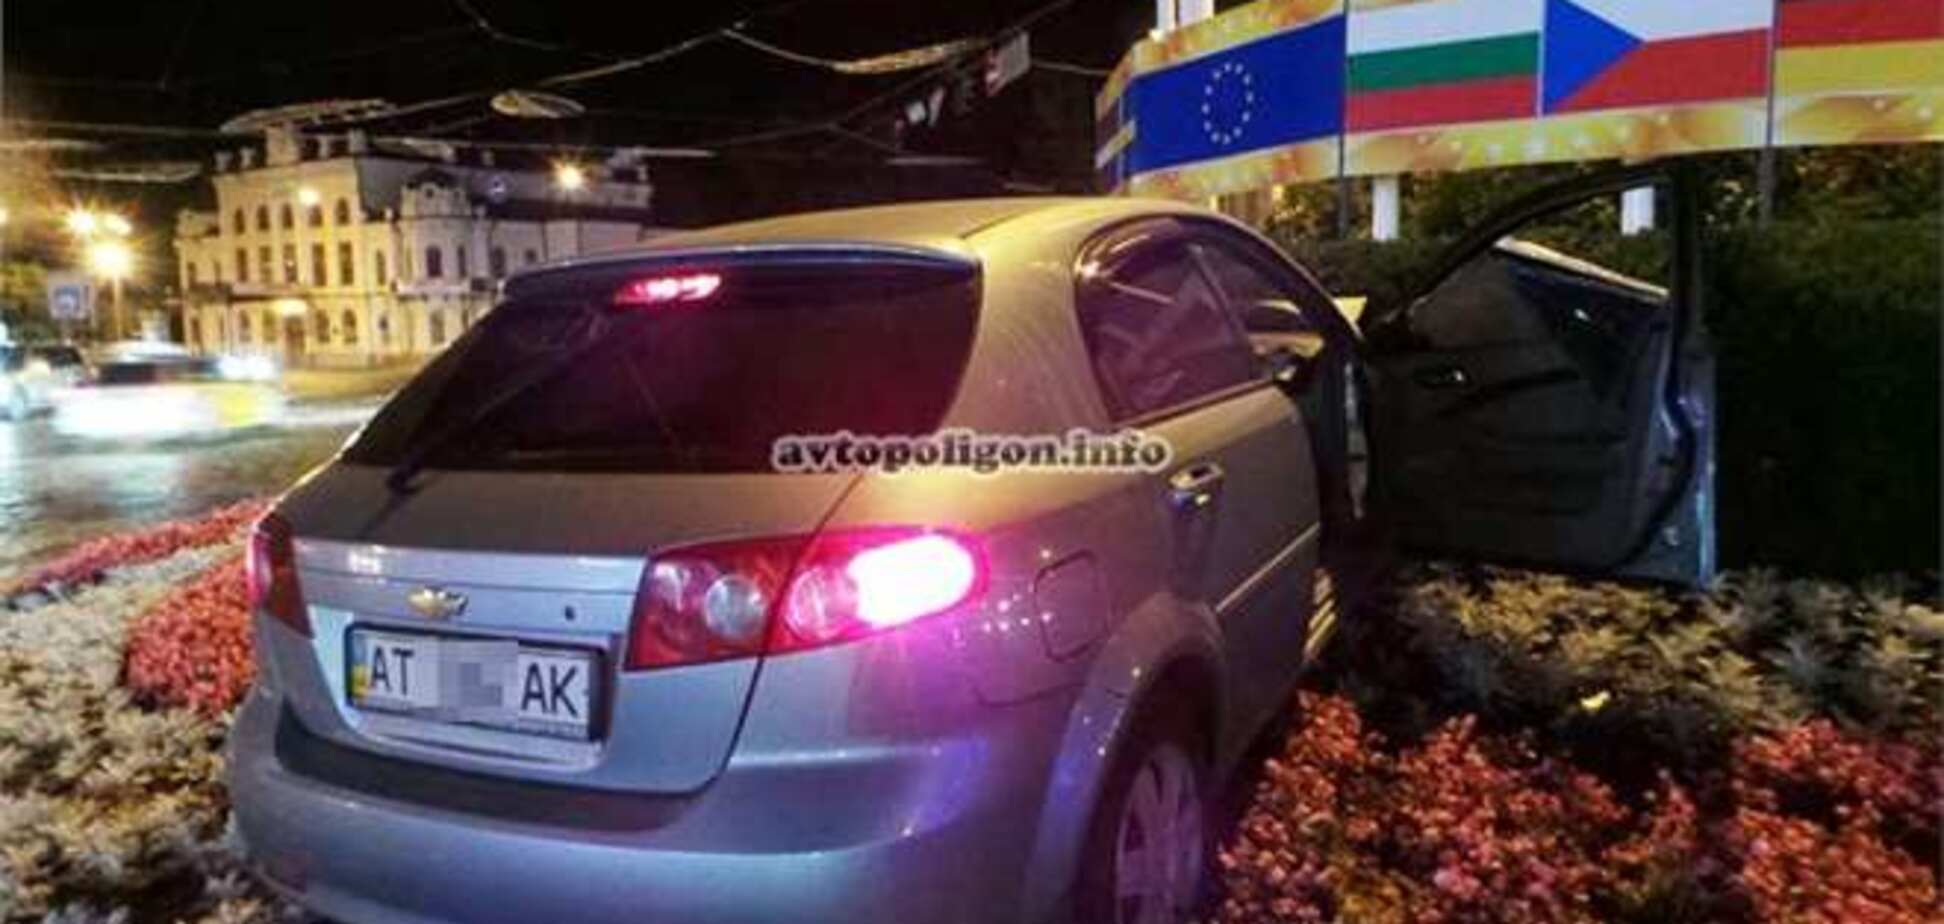 На Европейской площади в Киеве на клумбу приземлился автомобиль